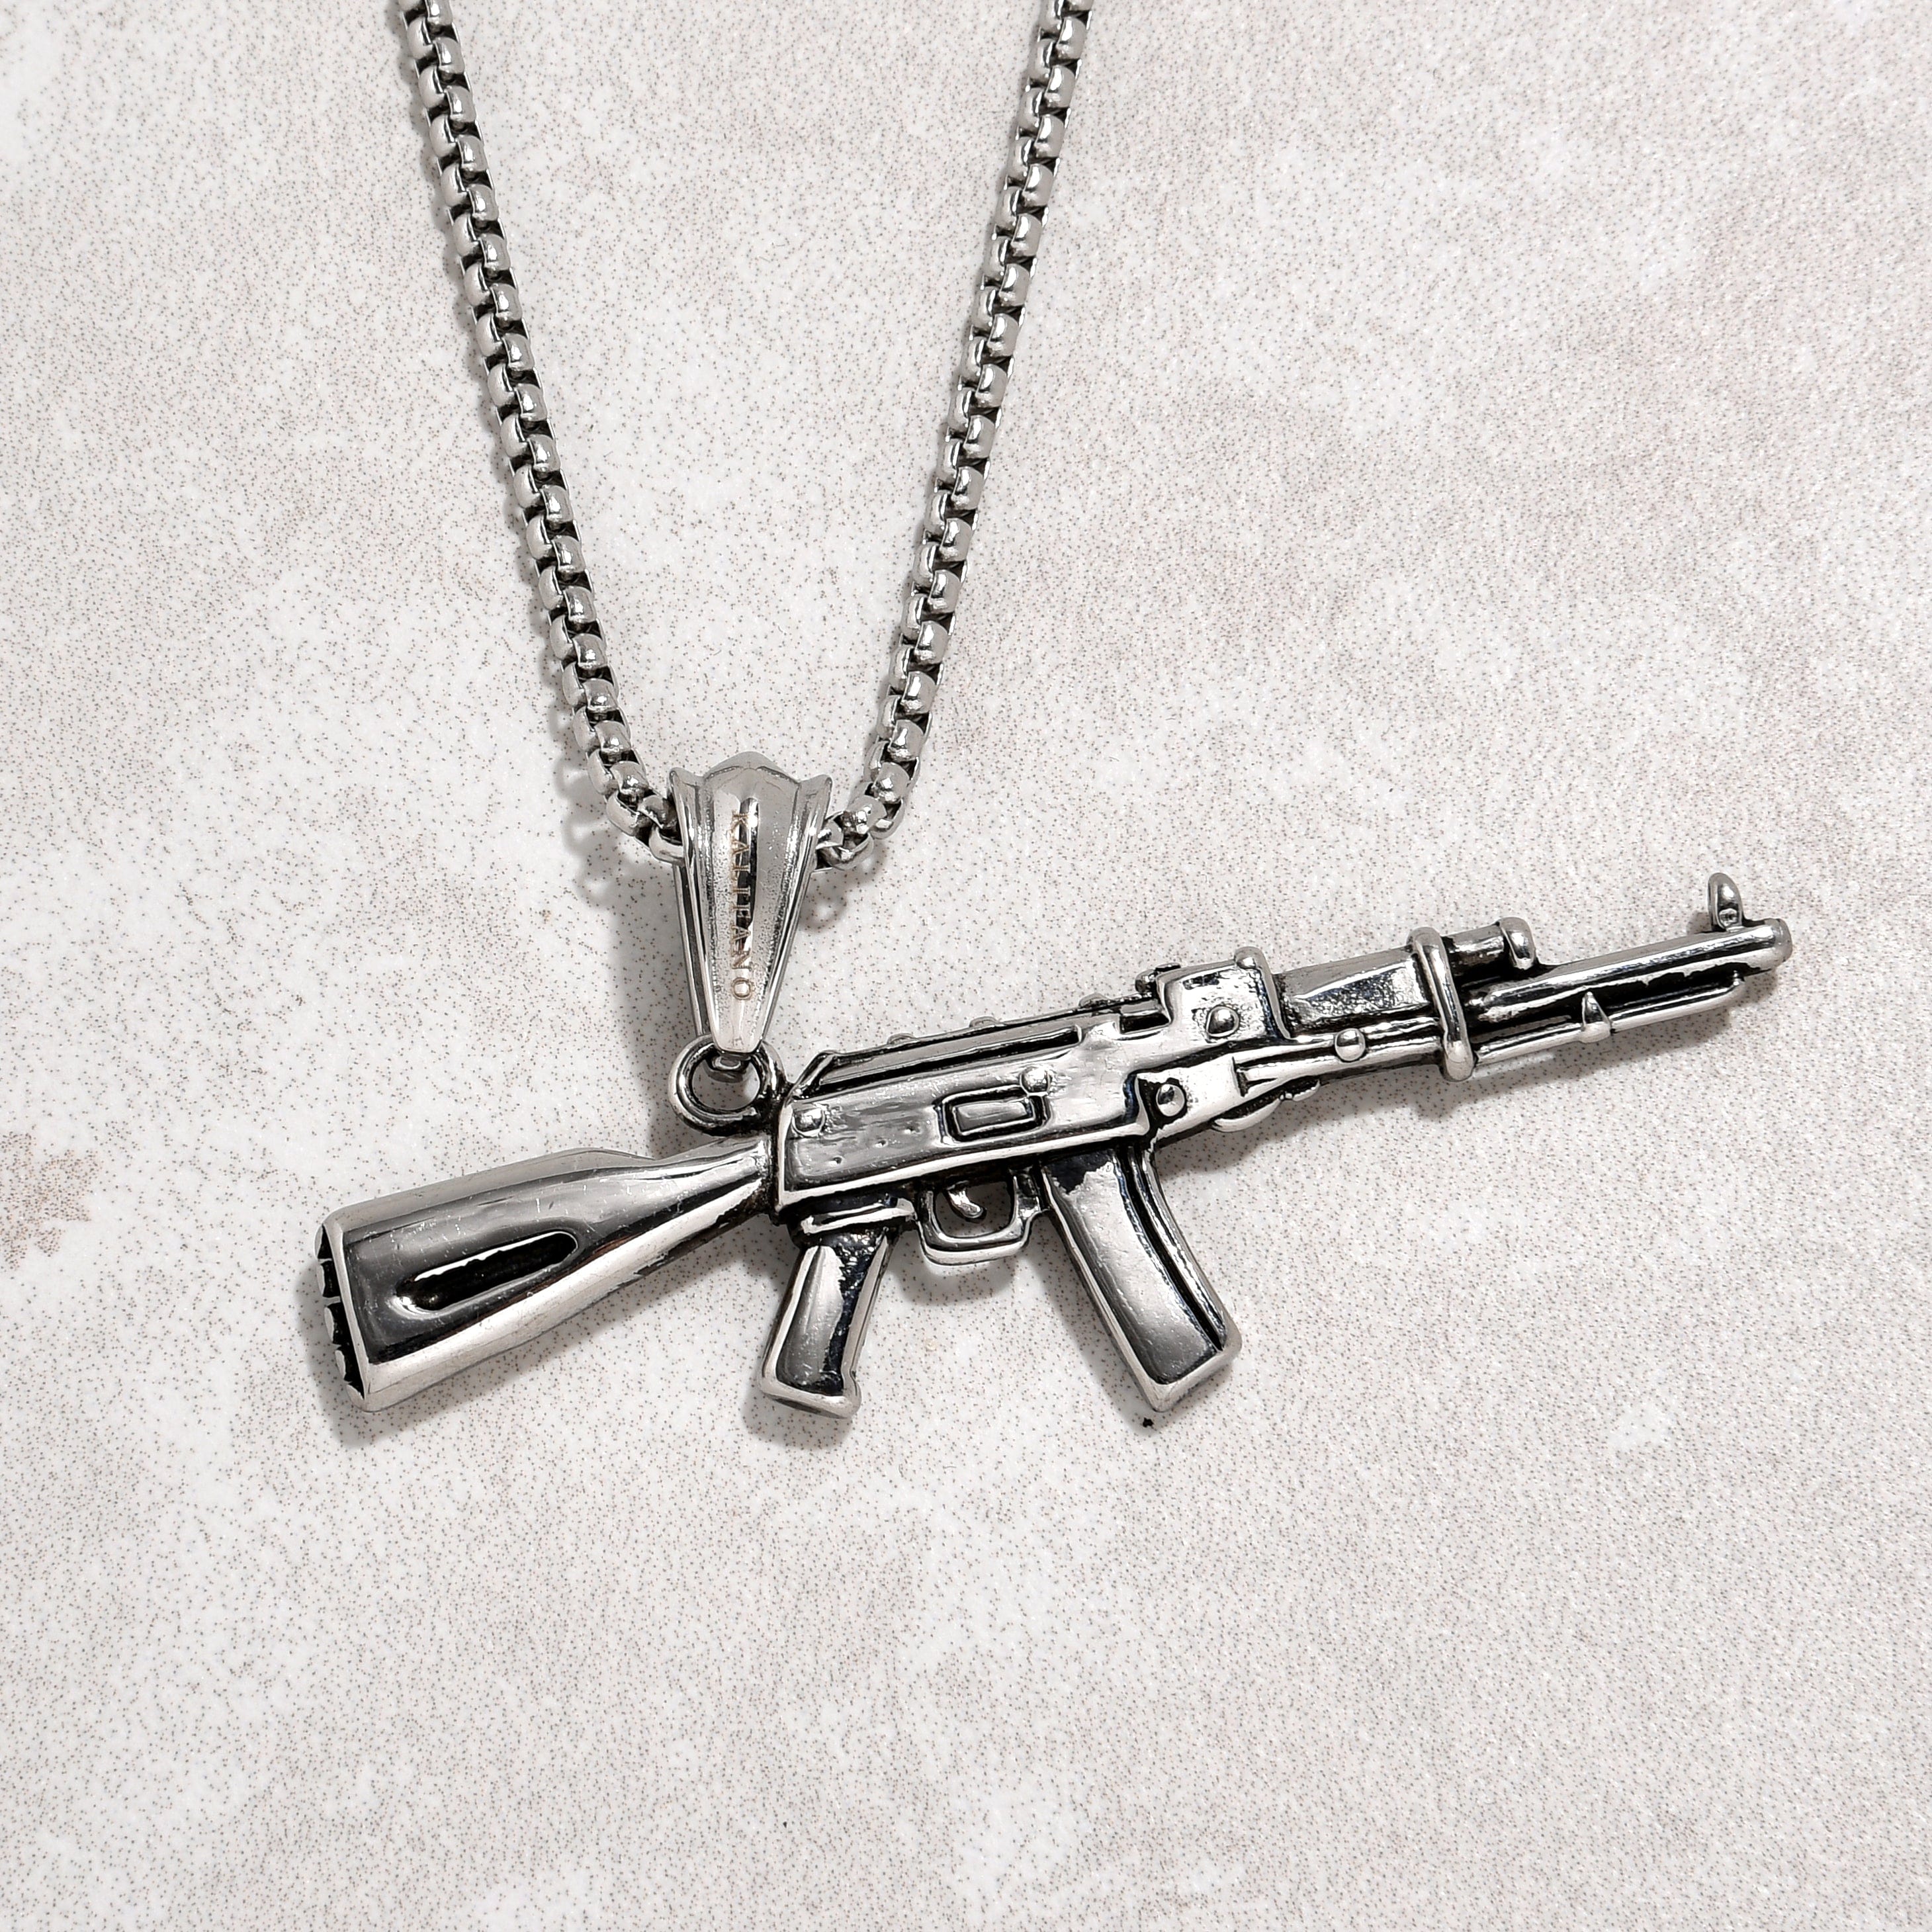 Kalifano Steel Hearts Jewelry Silver AK-47 Gun Steel Hearts Necklace SHN518-S